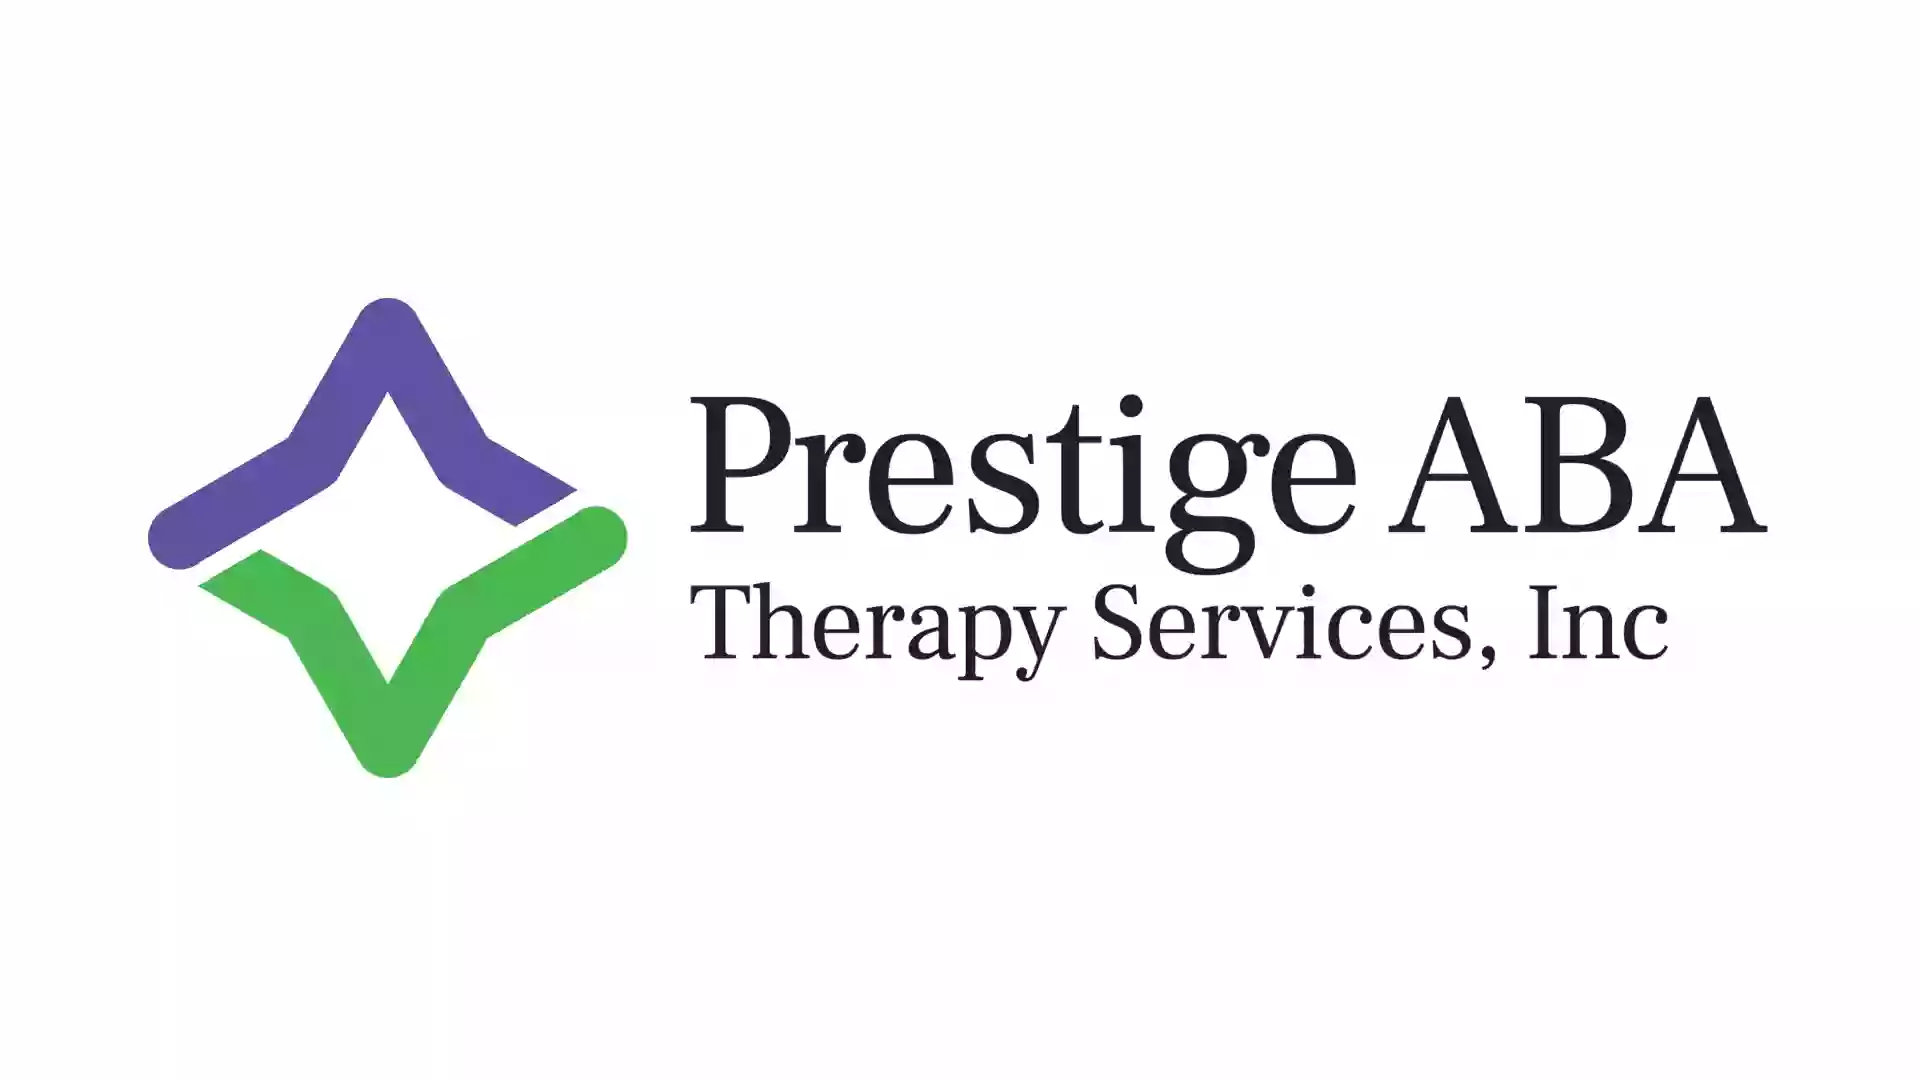 Prestige ABA Therapy Services, Inc